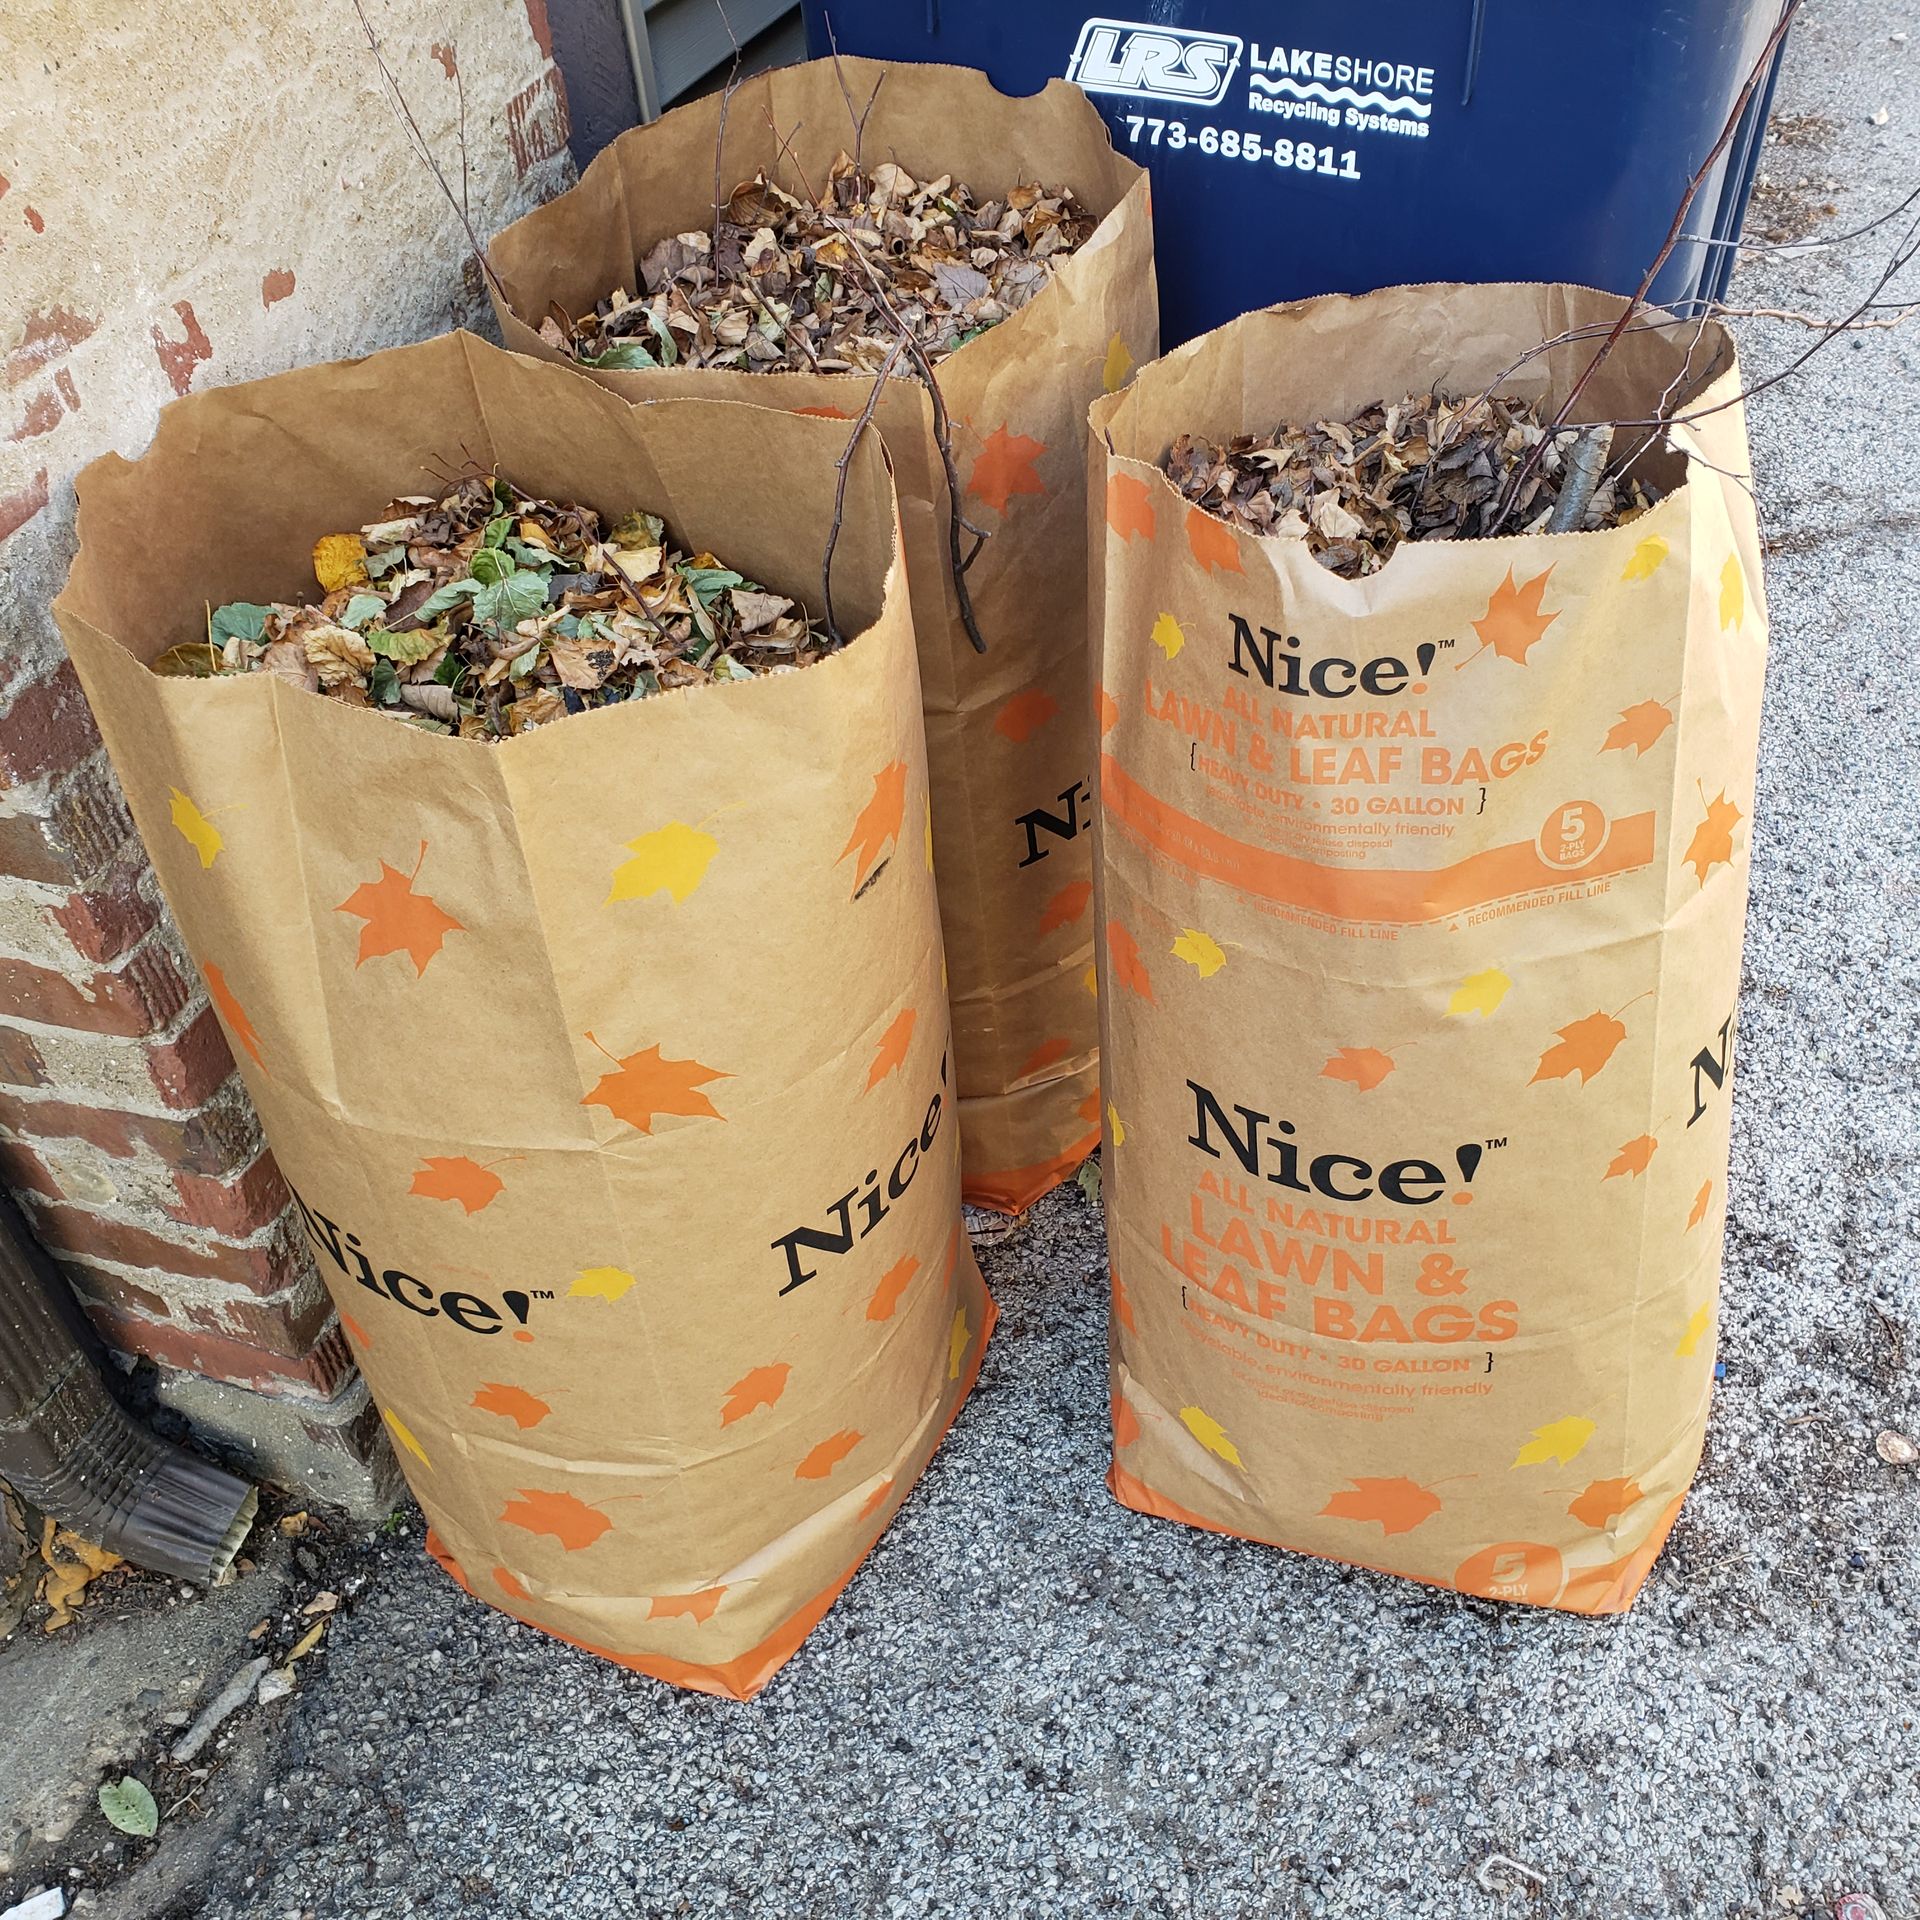 Simply Bio: Compost Lawn & Yard Waste Bags - Eco-Friendly, Heavy-Duty